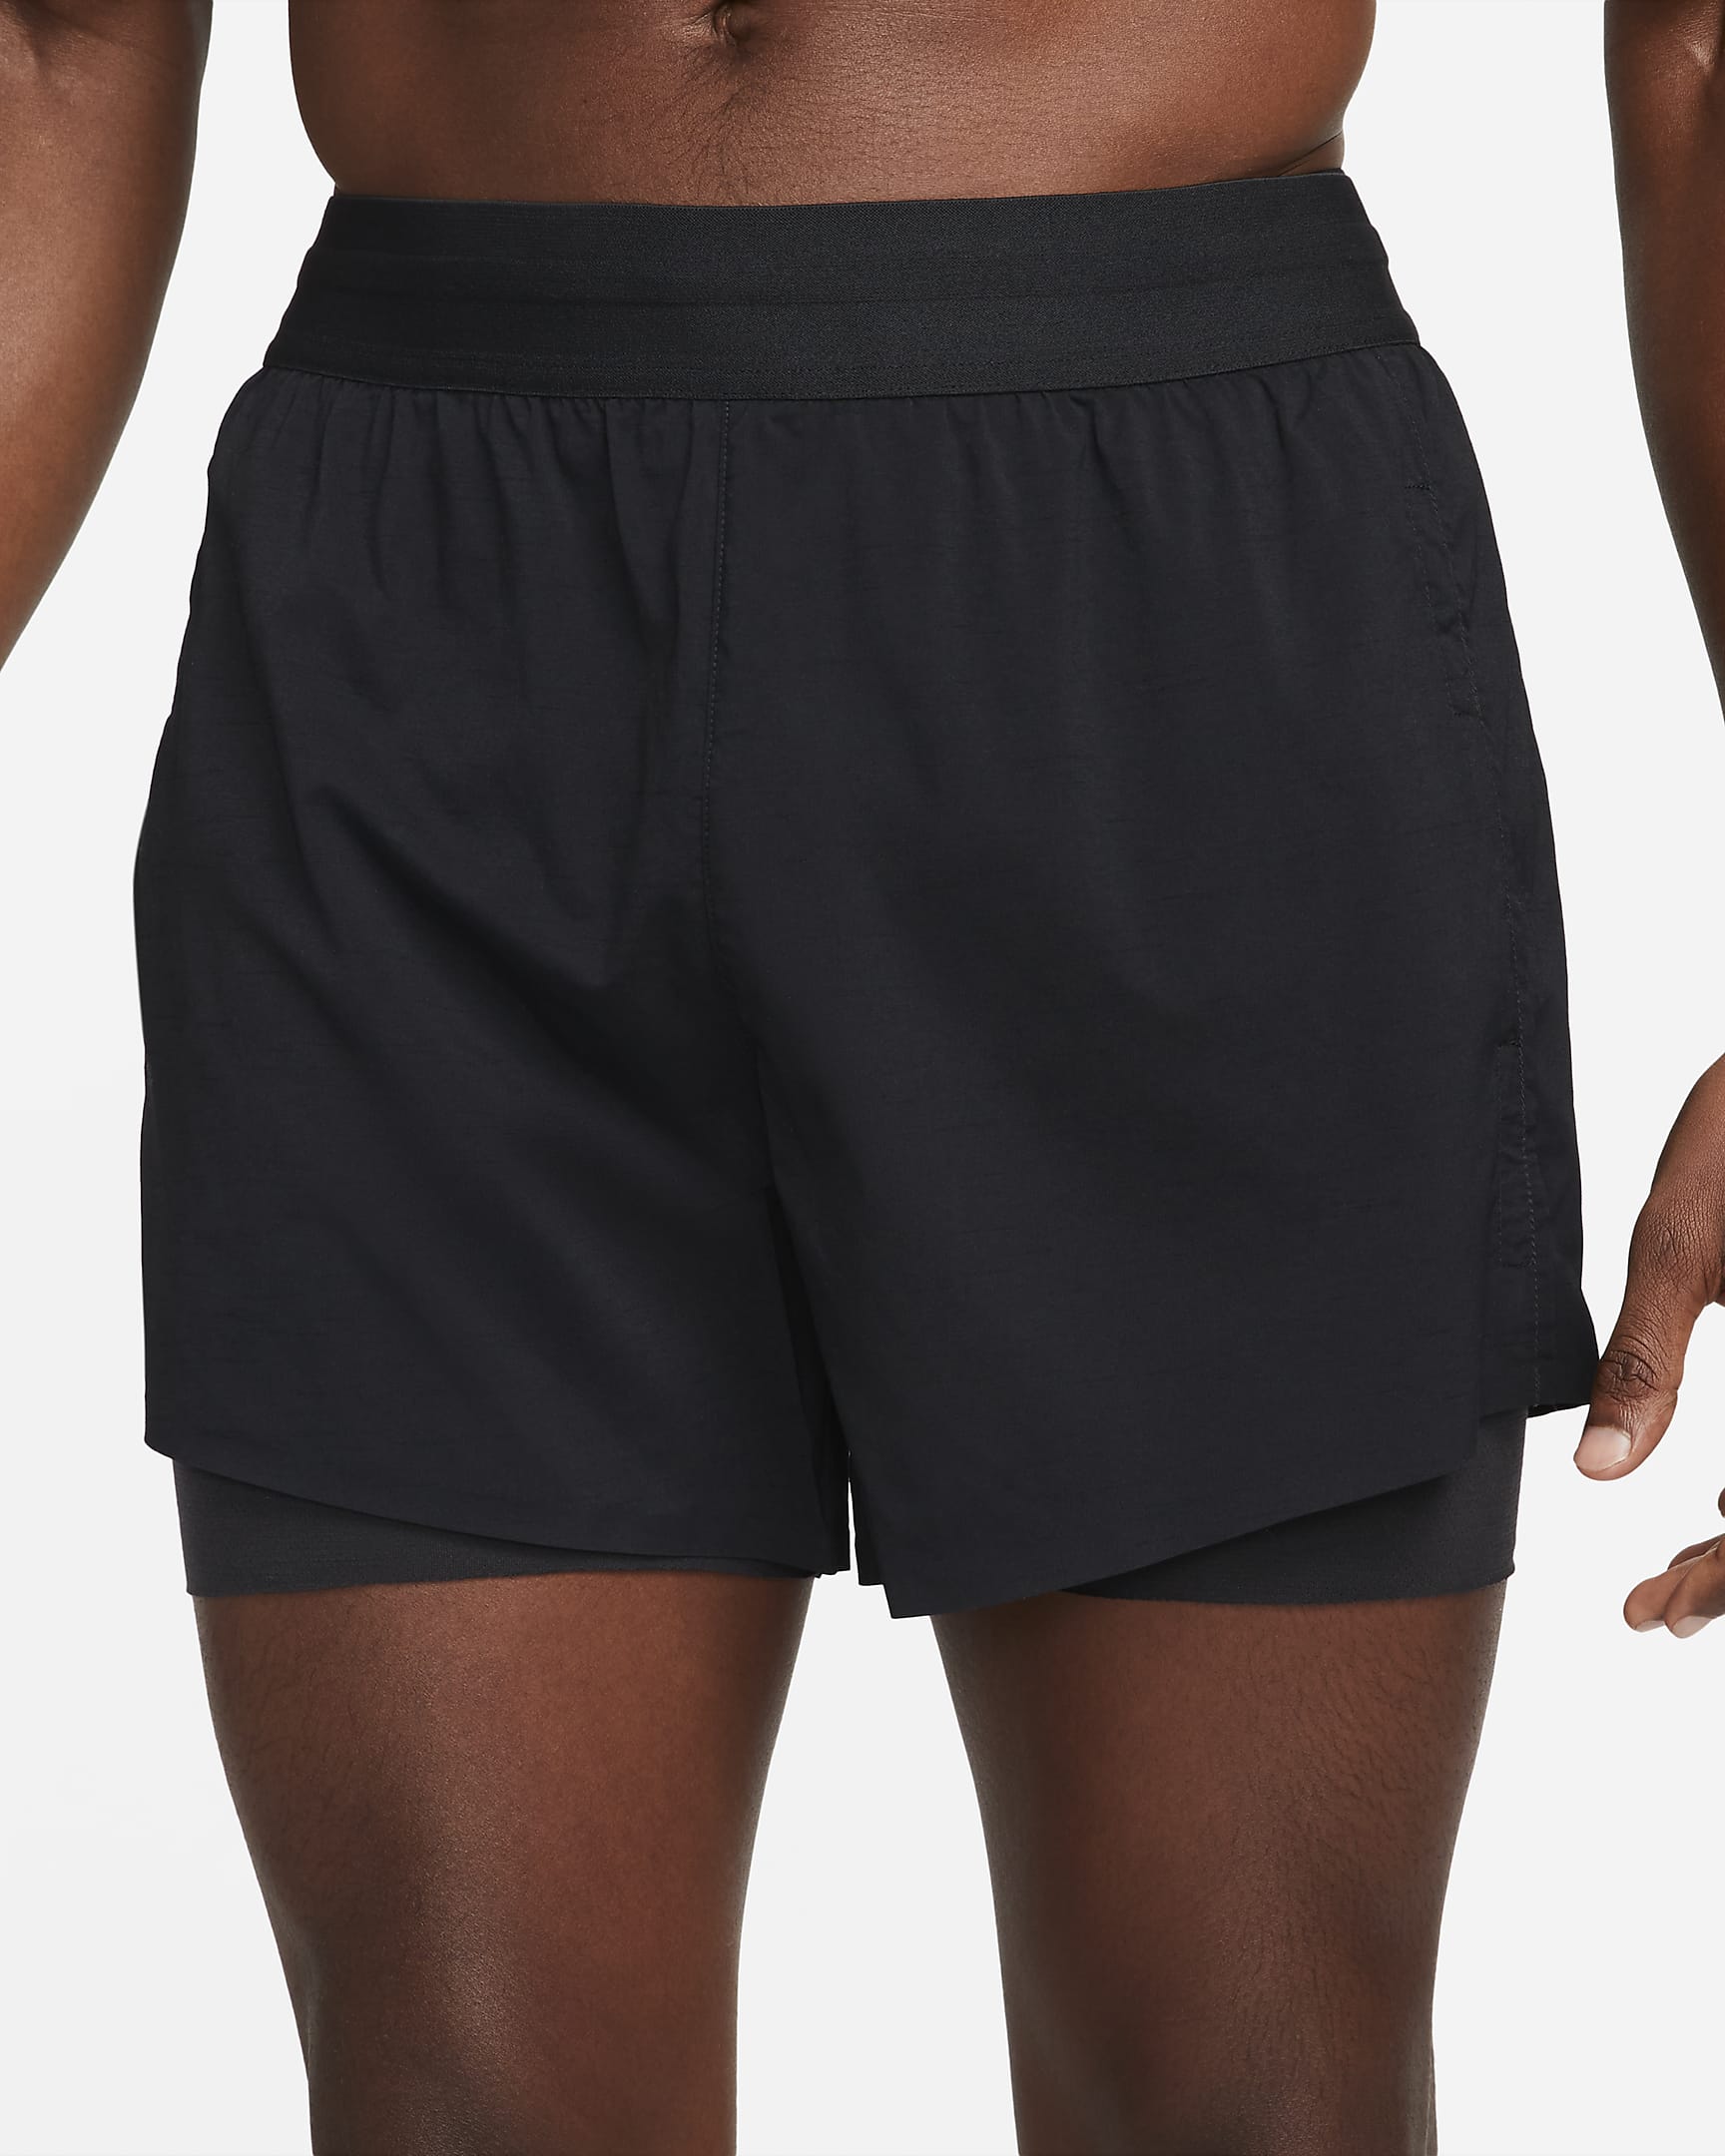 Nike Yoga Men's Hot Yoga Shorts. Nike FI